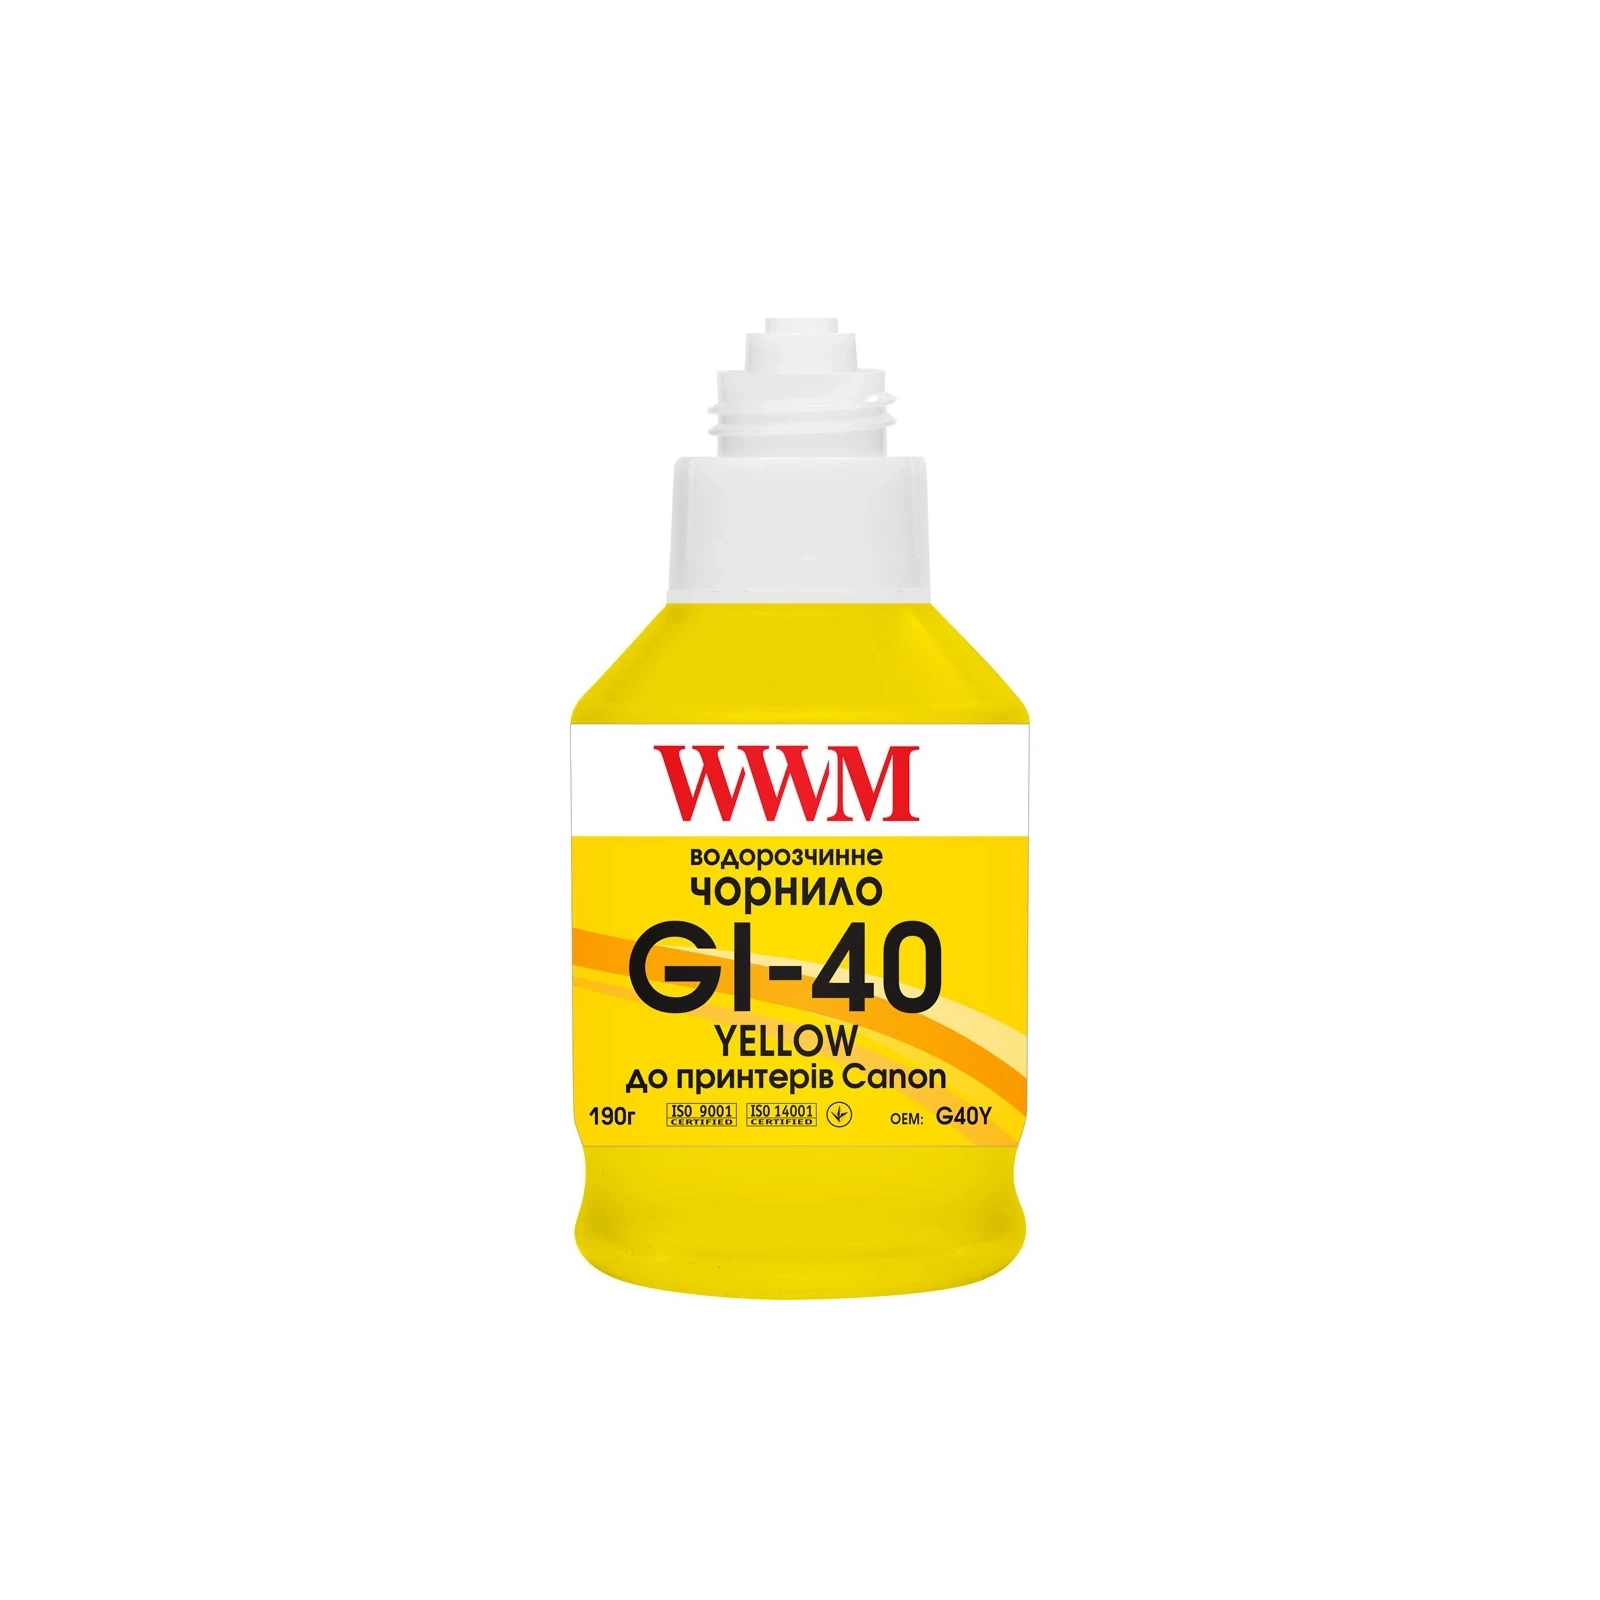 Чернила WWM Canon GI-40 для G5040/G6040 190г Magenta (KeyLock) (G40M) изображение 2